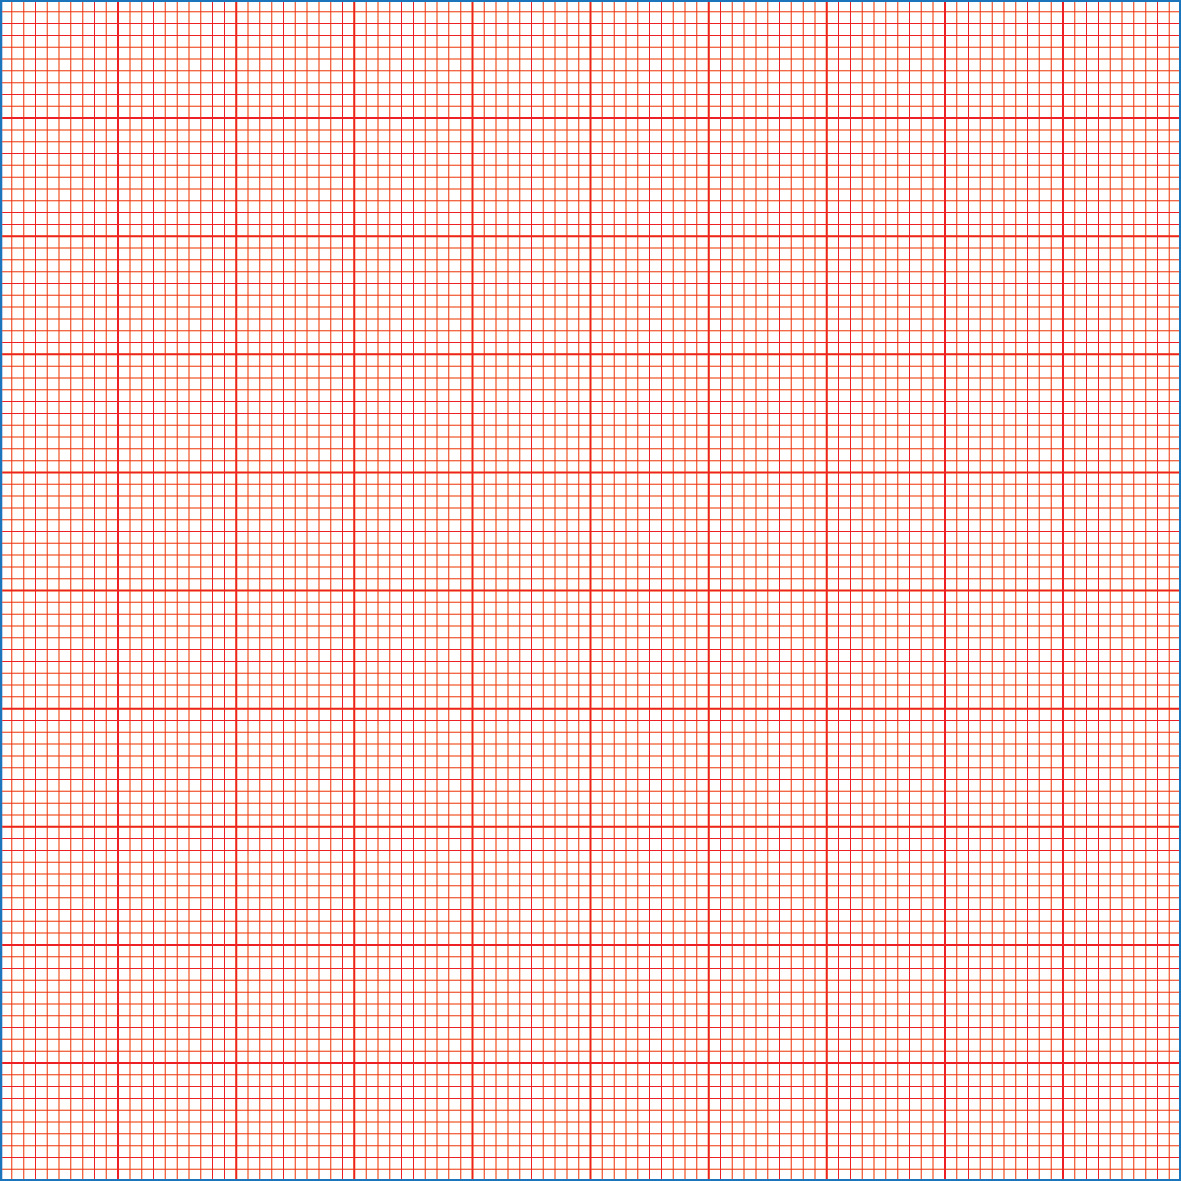 ورق مربعات مع مسطرة Pdf / ورقة A4 اوراق مسطرة جاهزة للكتابة Pdf Bertul